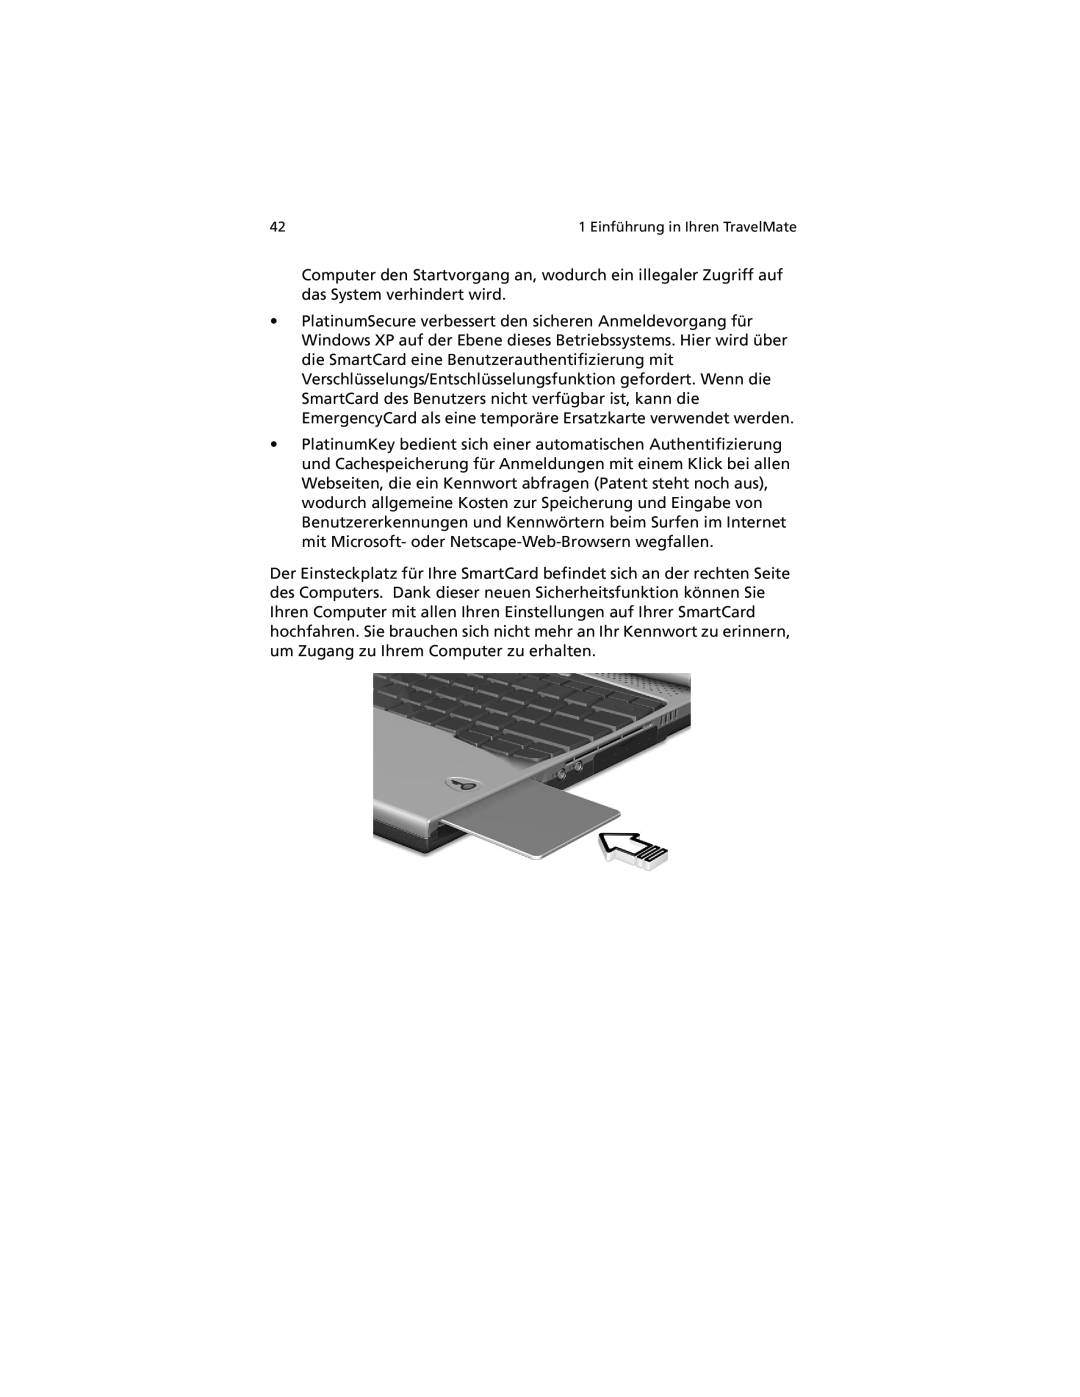 Acer C100-Series manual Computer den Startvorgang an, wodurch ein illegaler Zugriff auf das System verhindert wird 